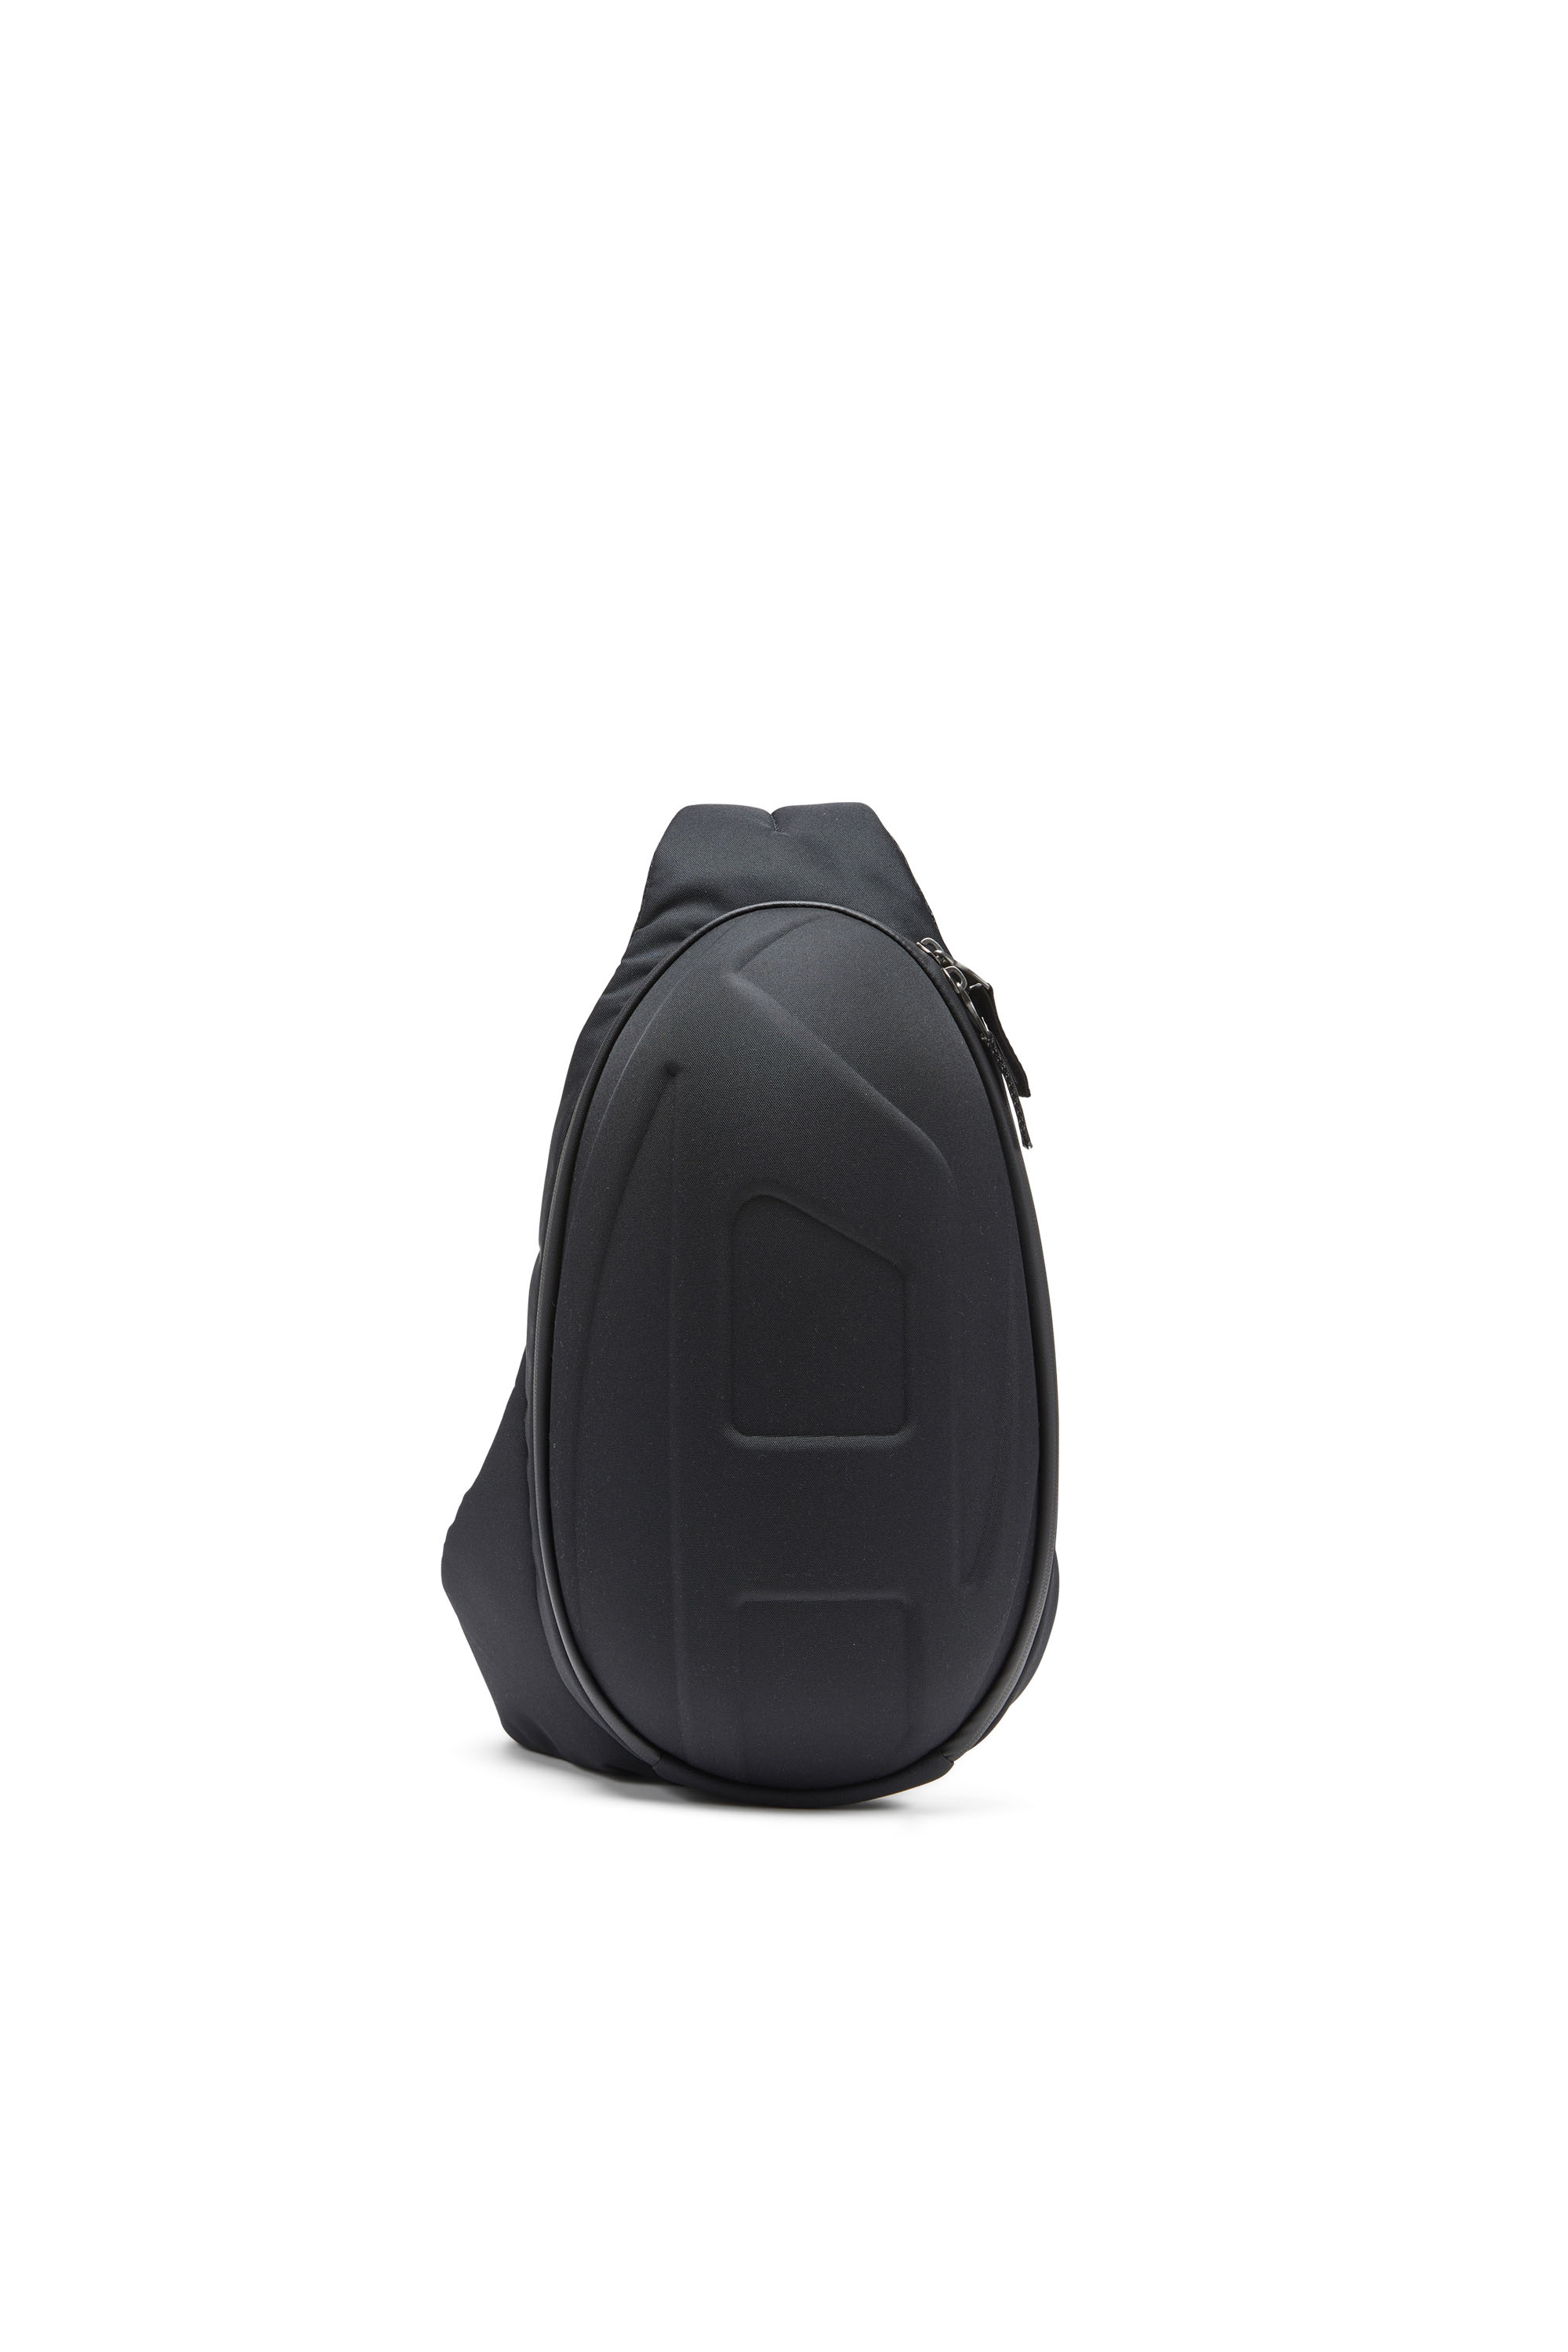 Diesel - 1DR-POD SLING BAG, Man 1DR-Pod-Hard shell sling bag in Black - Image 1